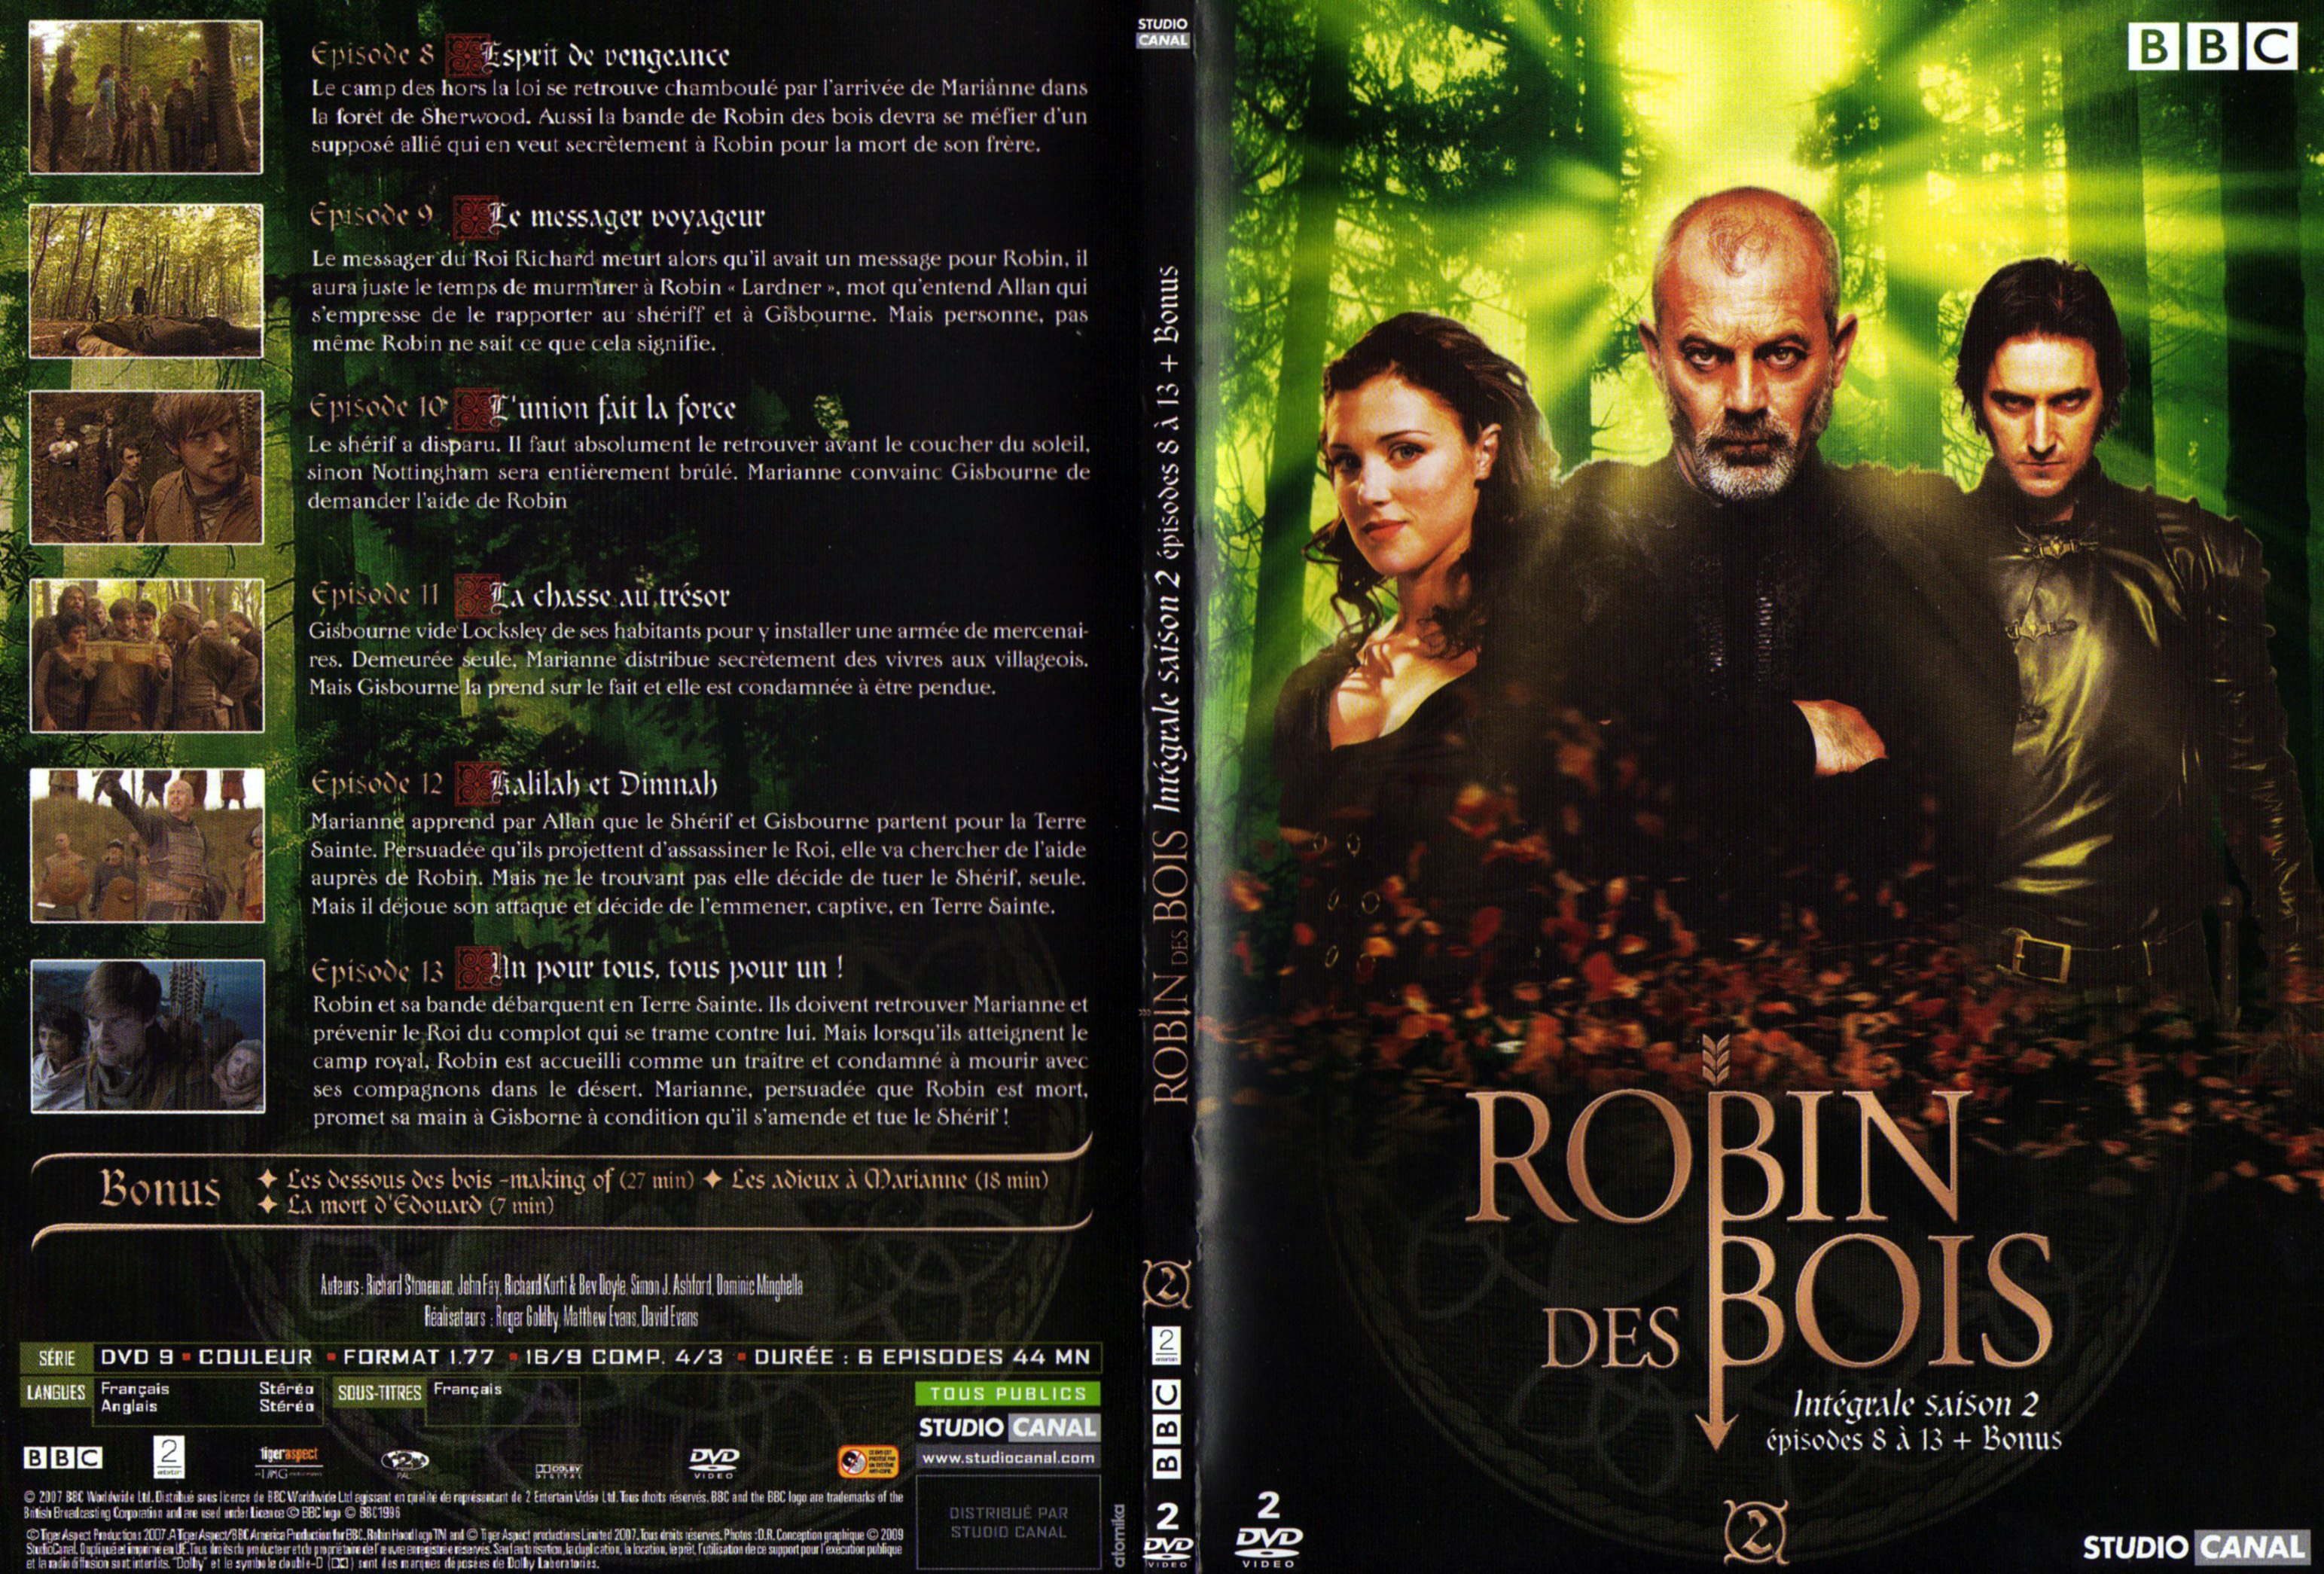 Jaquette DVD Robin des bois Saison 2 DVD 2